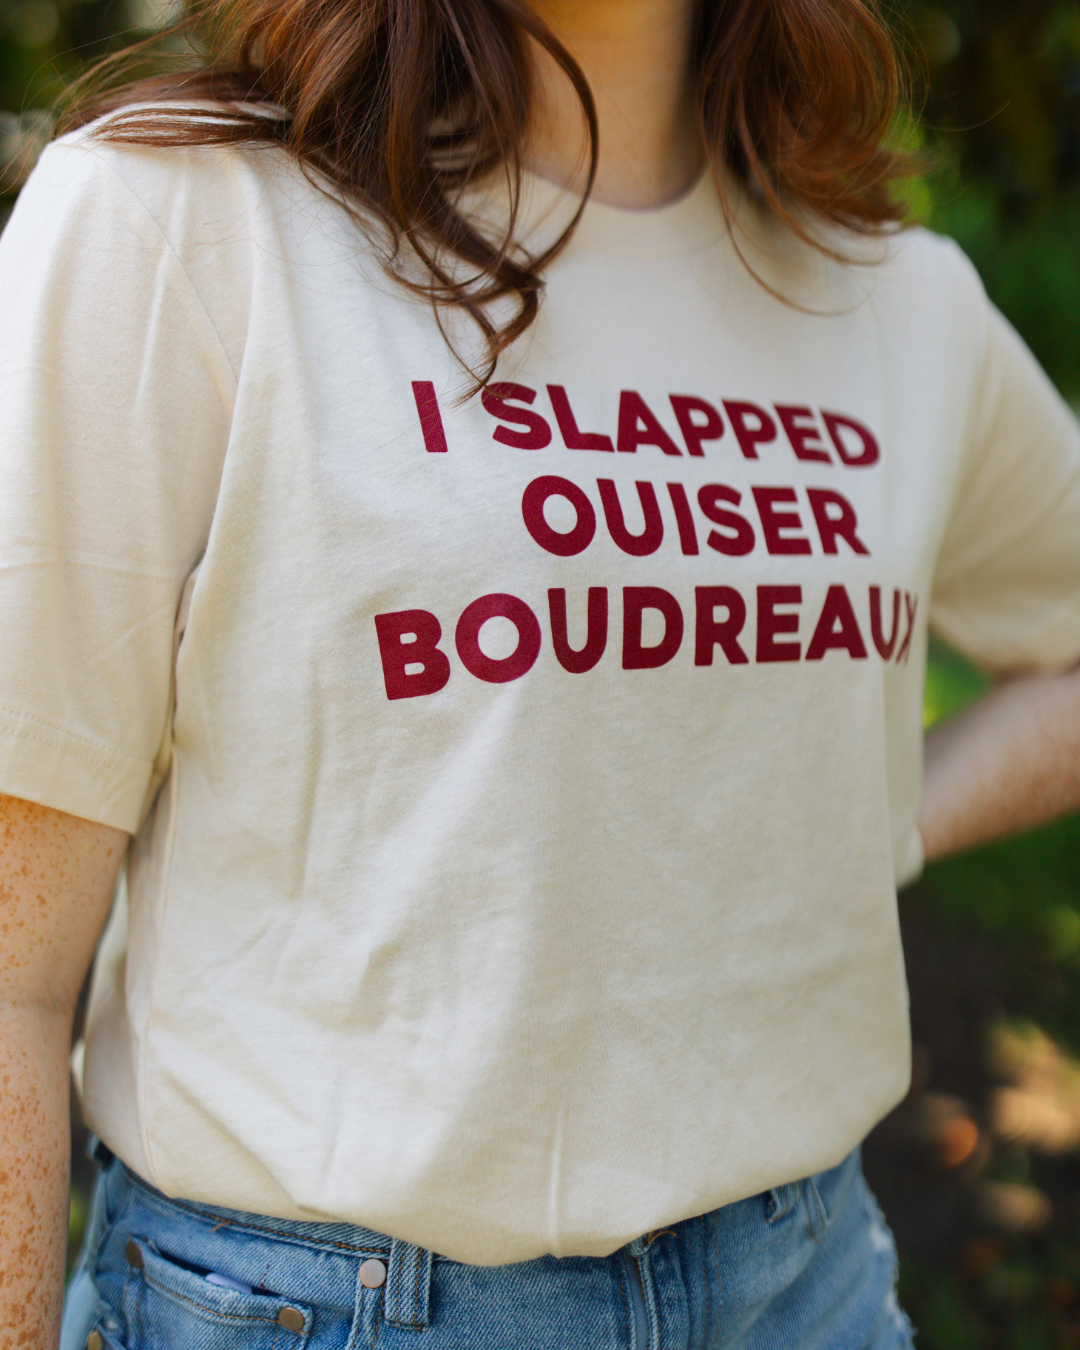 I Slapped Ouiser Boudreaux T-shirt